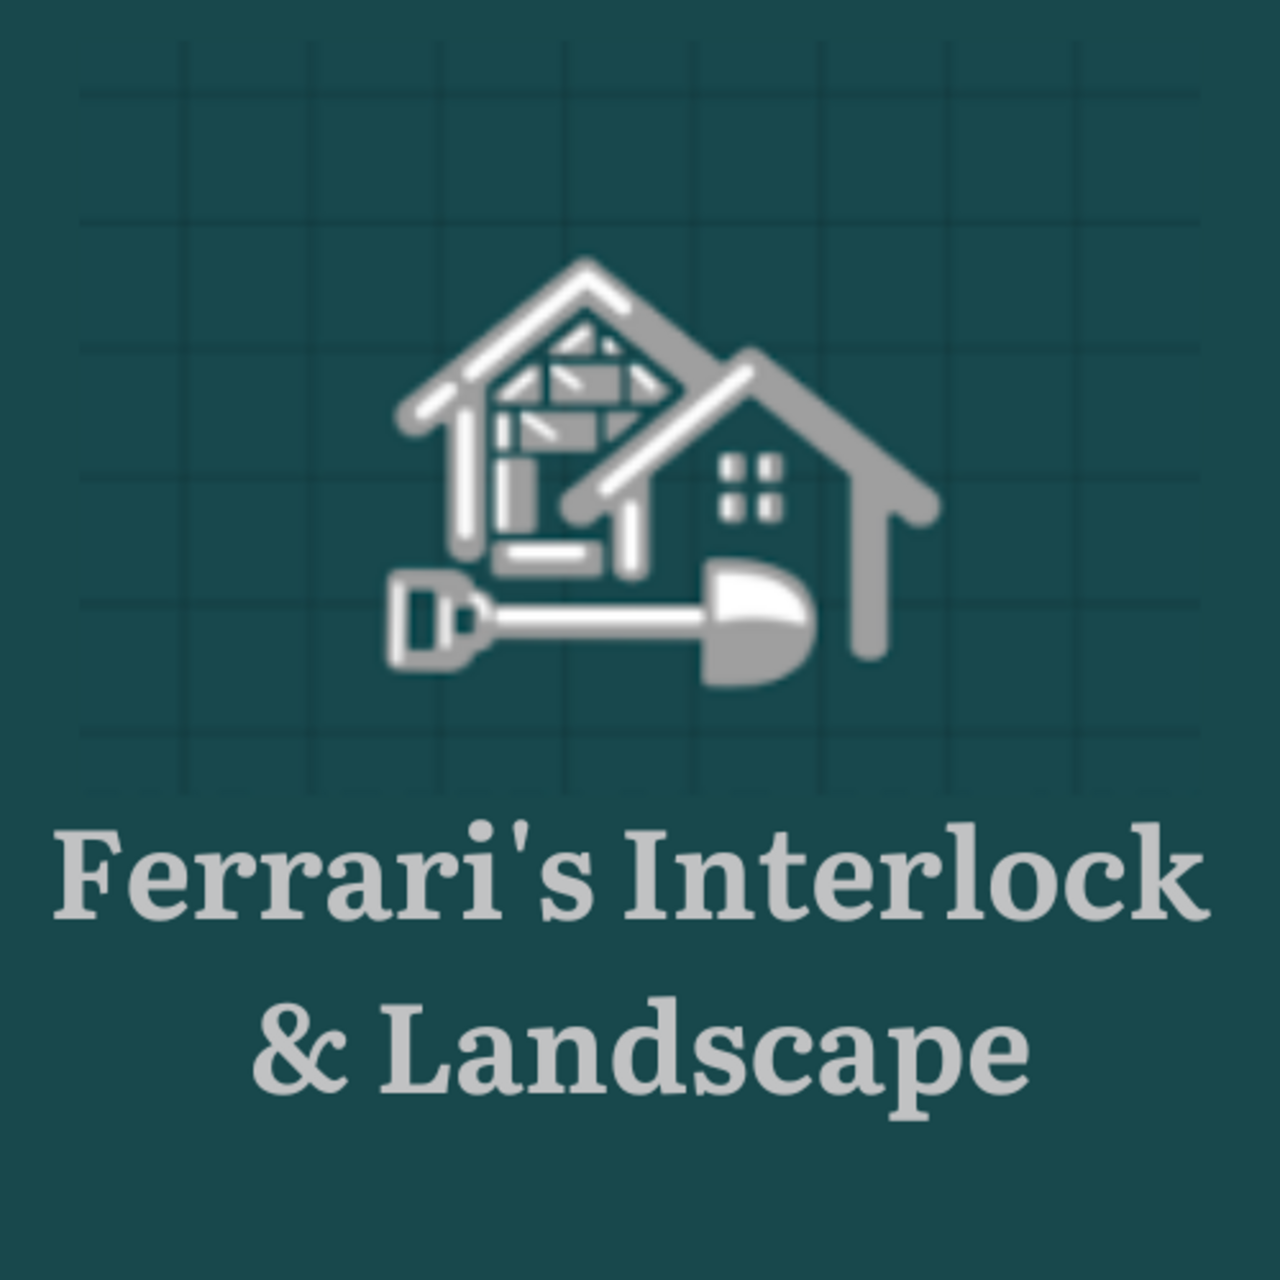 Ferrari's Interlock & Landscape's logo